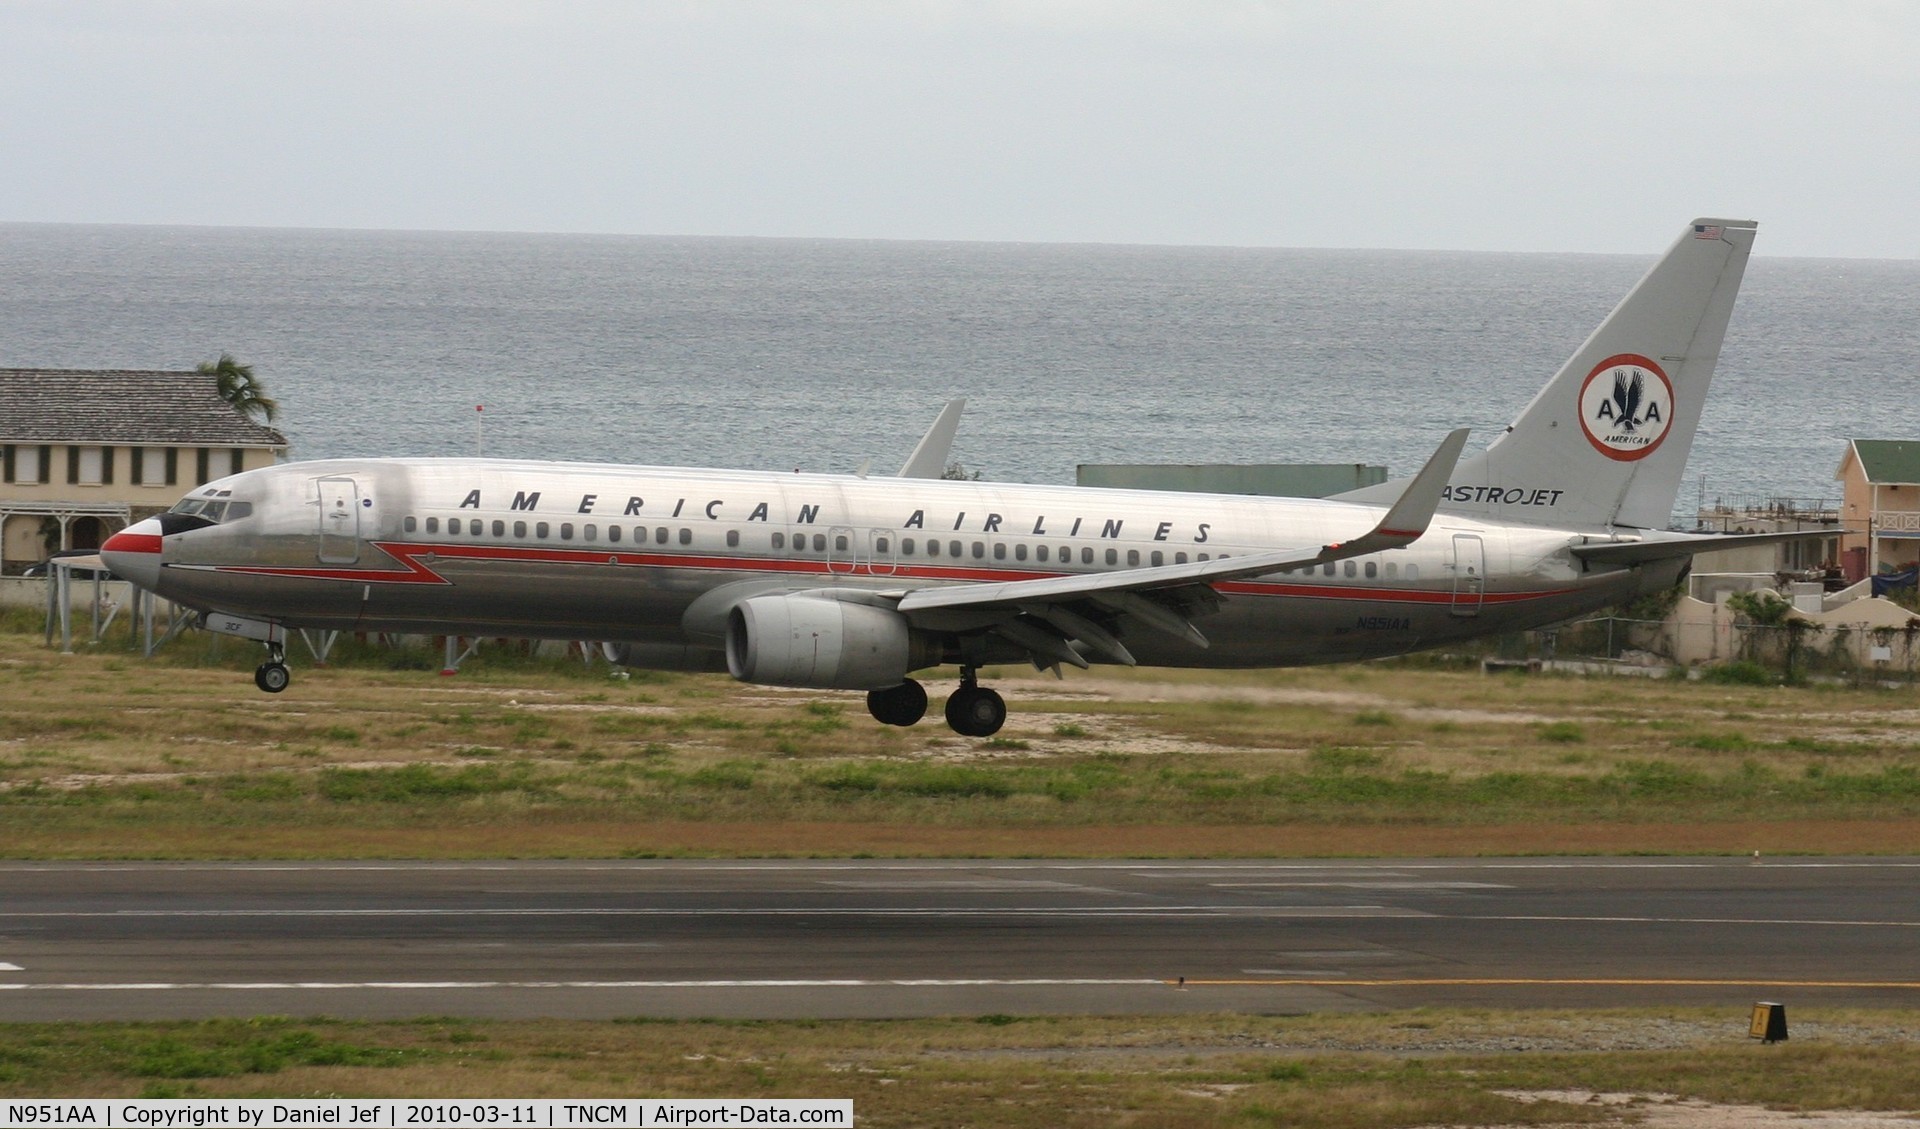 N951AA, 2000 Boeing 737-823 C/N 29538, N951AA landing at TNCM